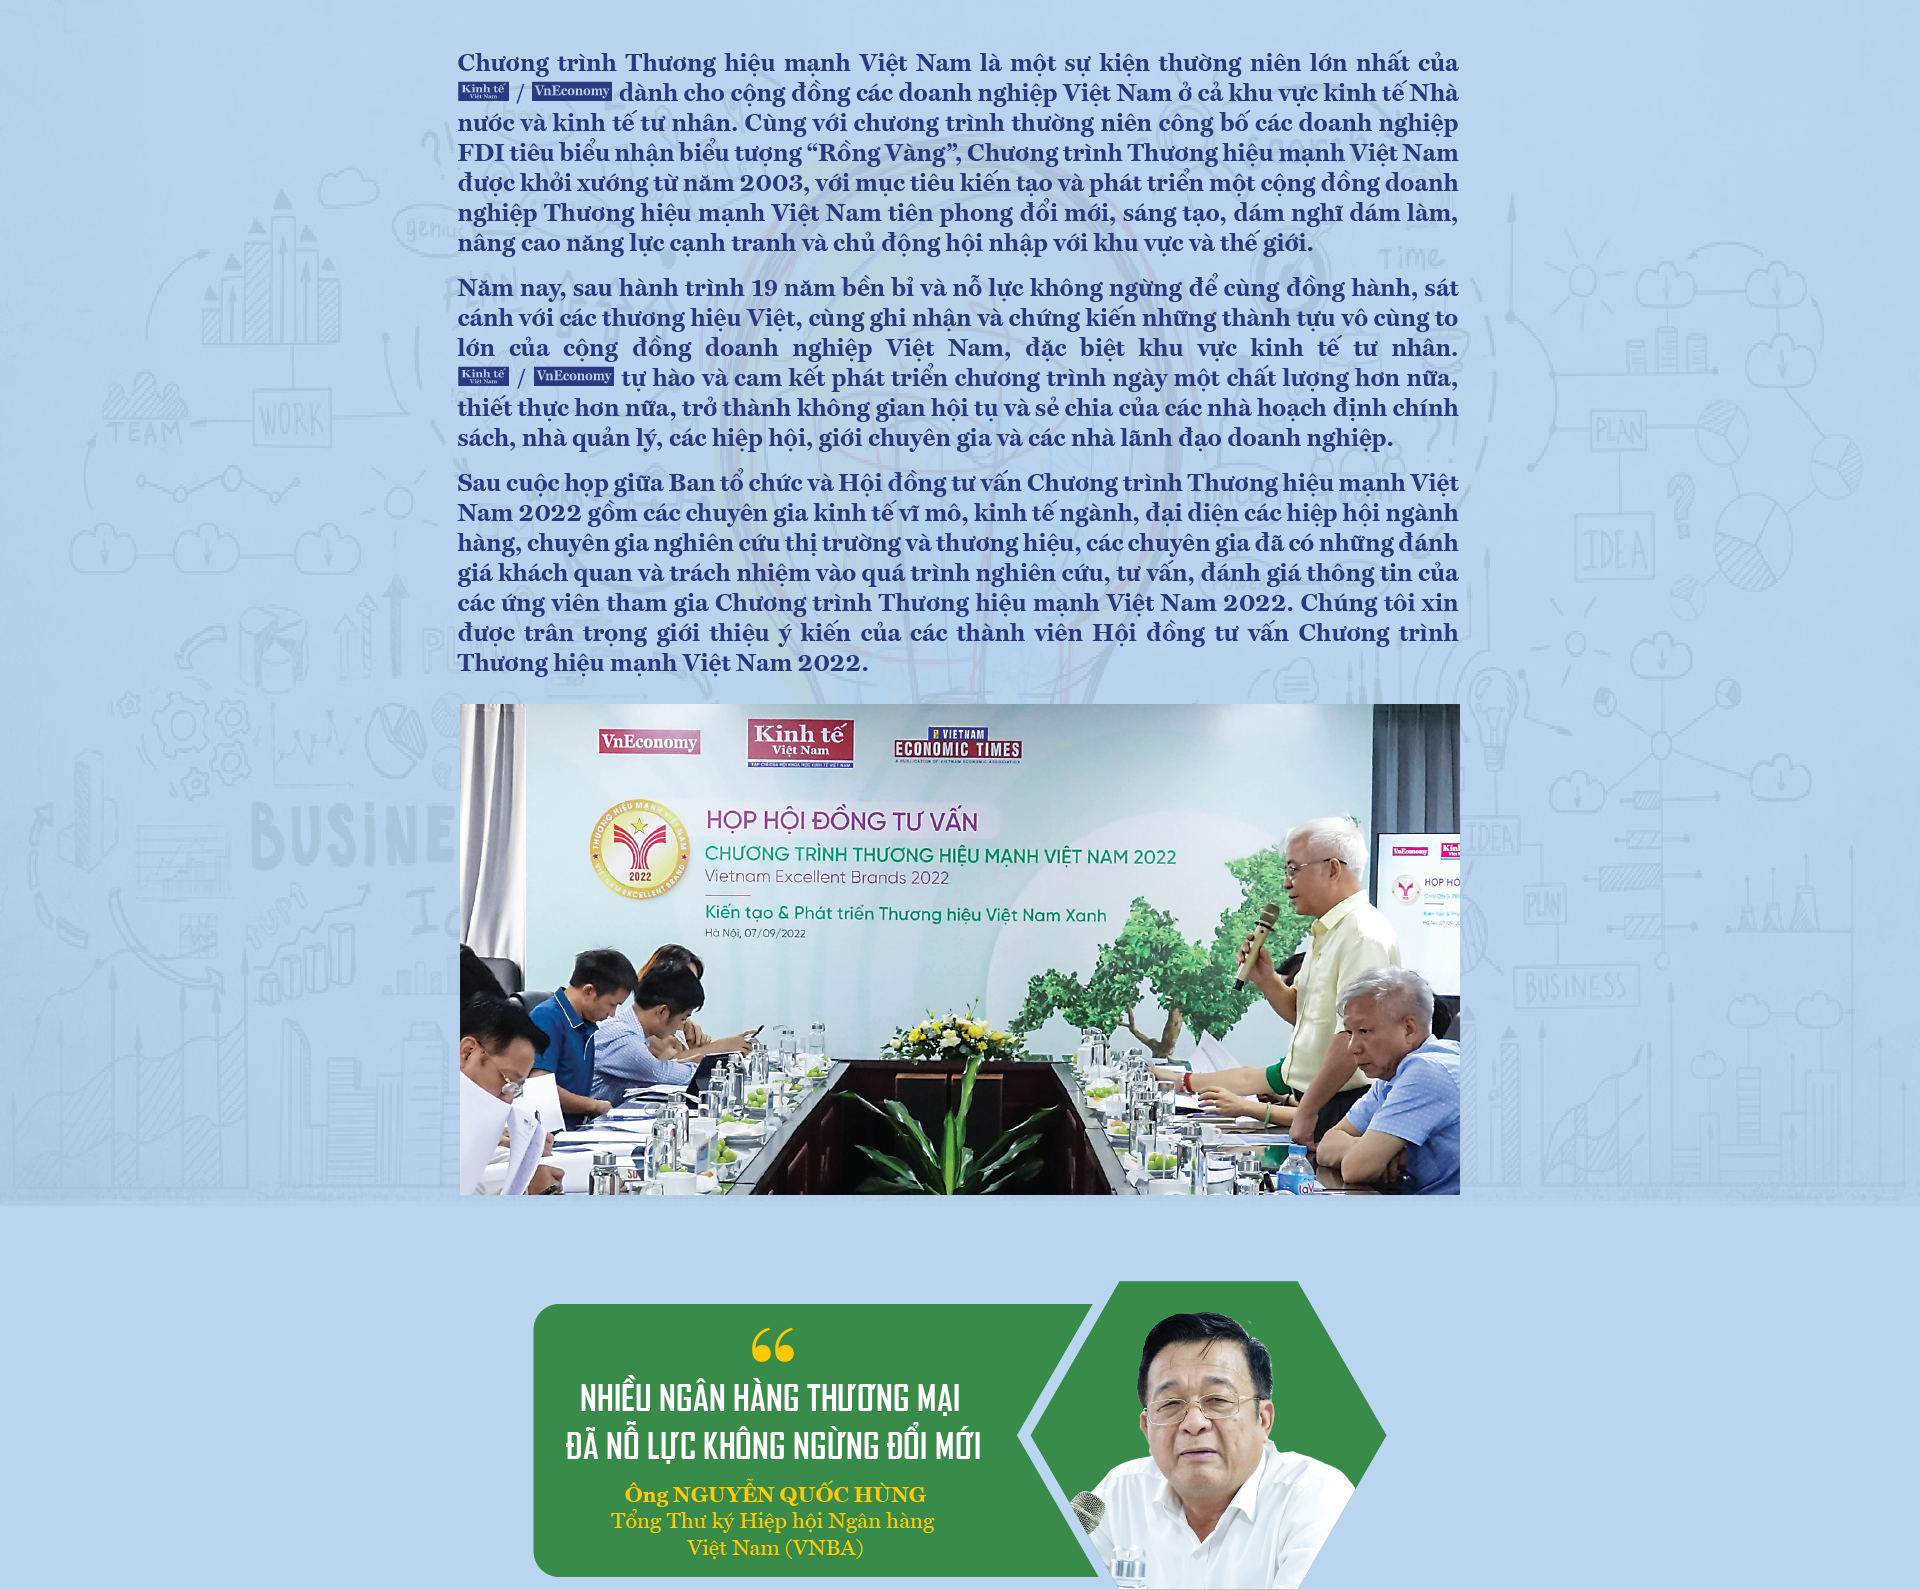 Cộng đồng doanh nghiệp Thương hiệu Mạnh Việt Nam: Tiên phong đổi mới, sáng tạo - Ảnh 2